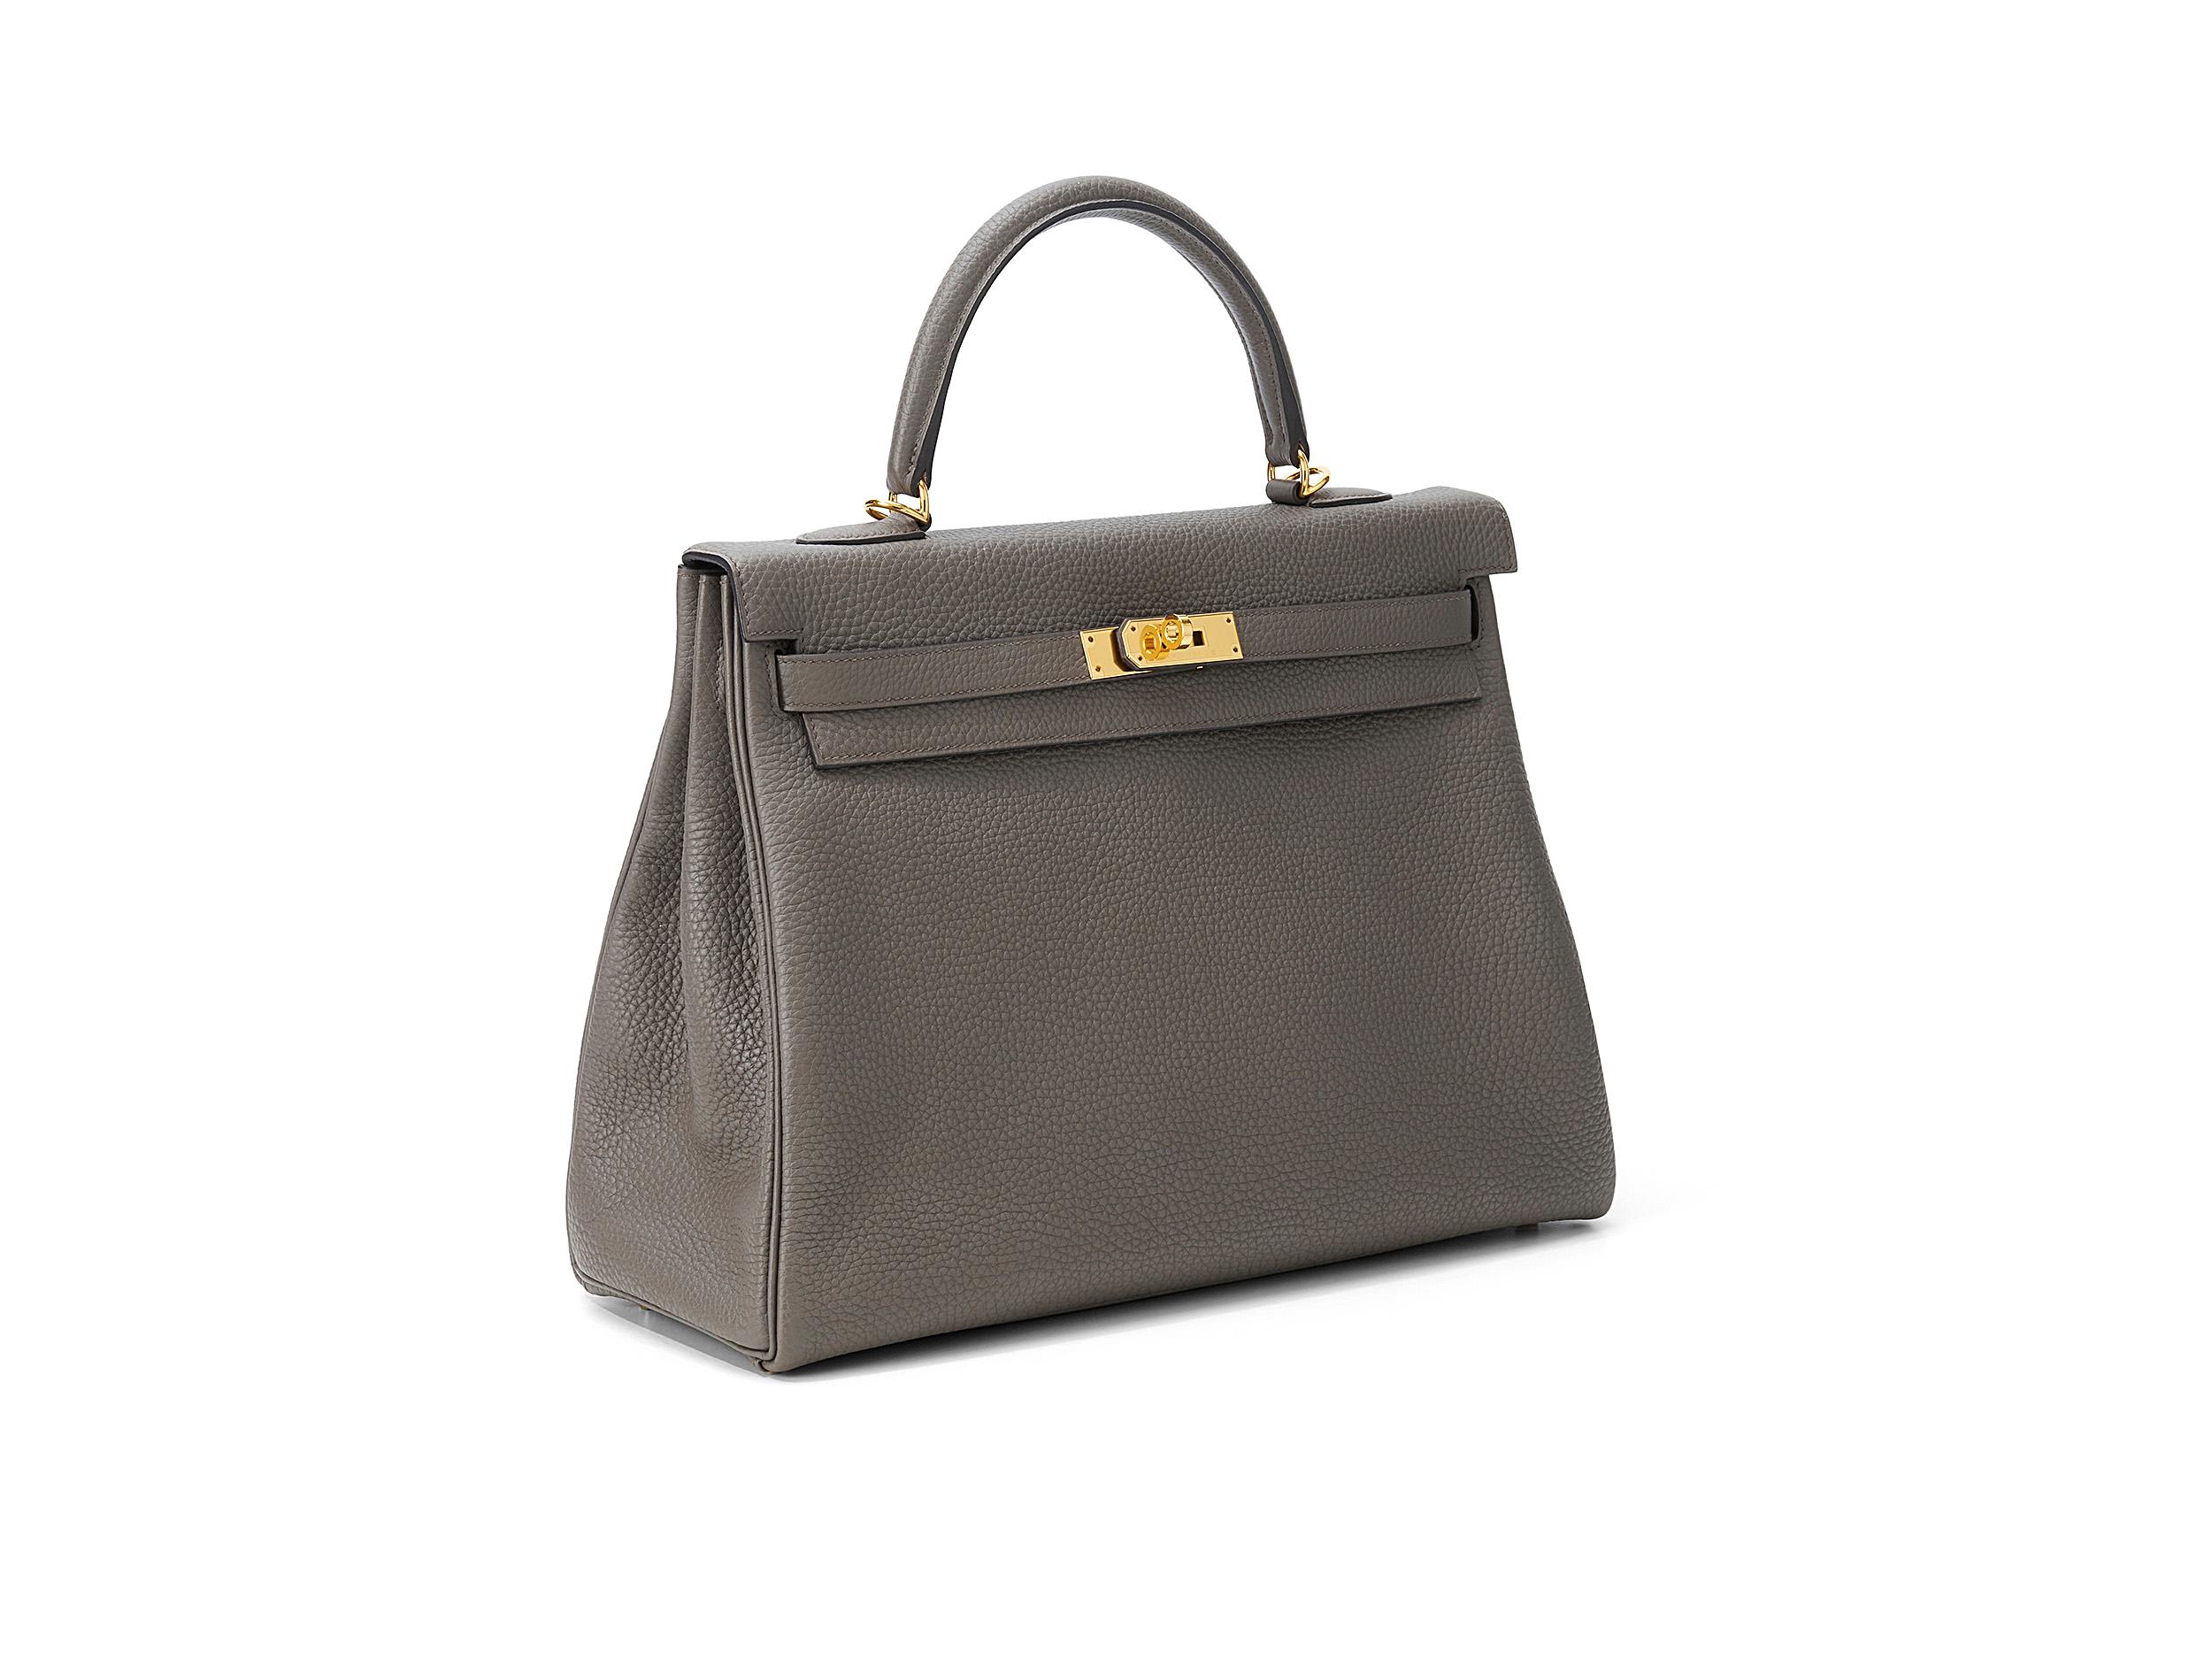 Kelly 35 d'Hermès en cuir gris et togo, orné de ferrures dorées. Le sac n'a pas été porté et est livré complet avec le ticket de caisse original.  
Timbre D (2019) 

